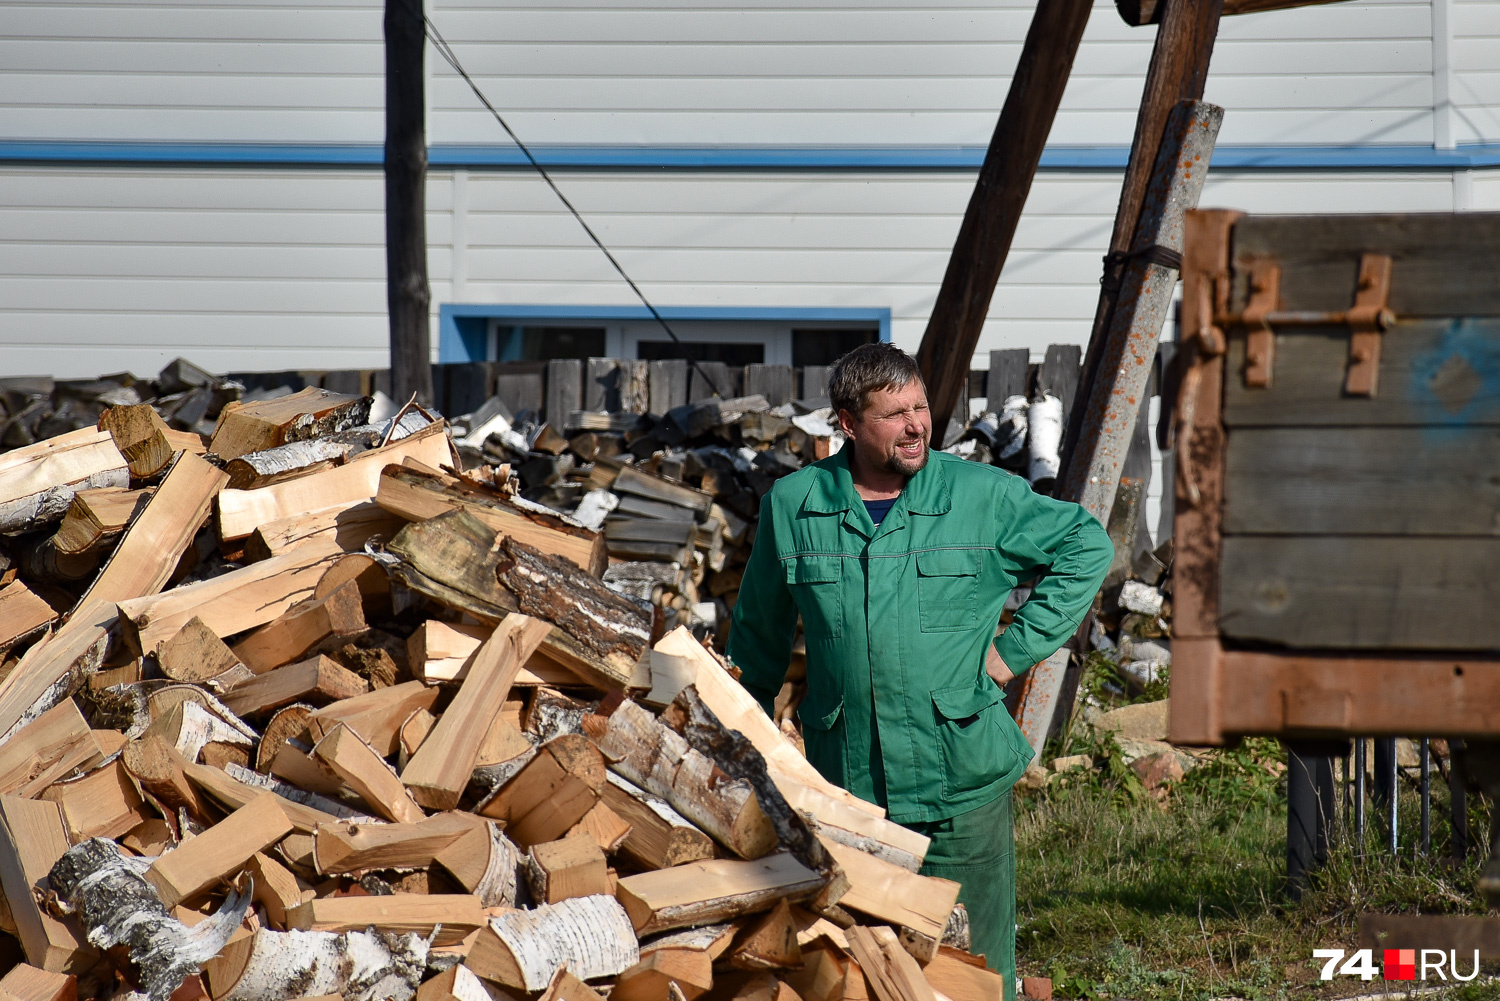 С появлением газа потребность в дровах резко снизилась, хотя газифицированы еще не все постройки общины, так что Алексею приходится иногда помахать колуном